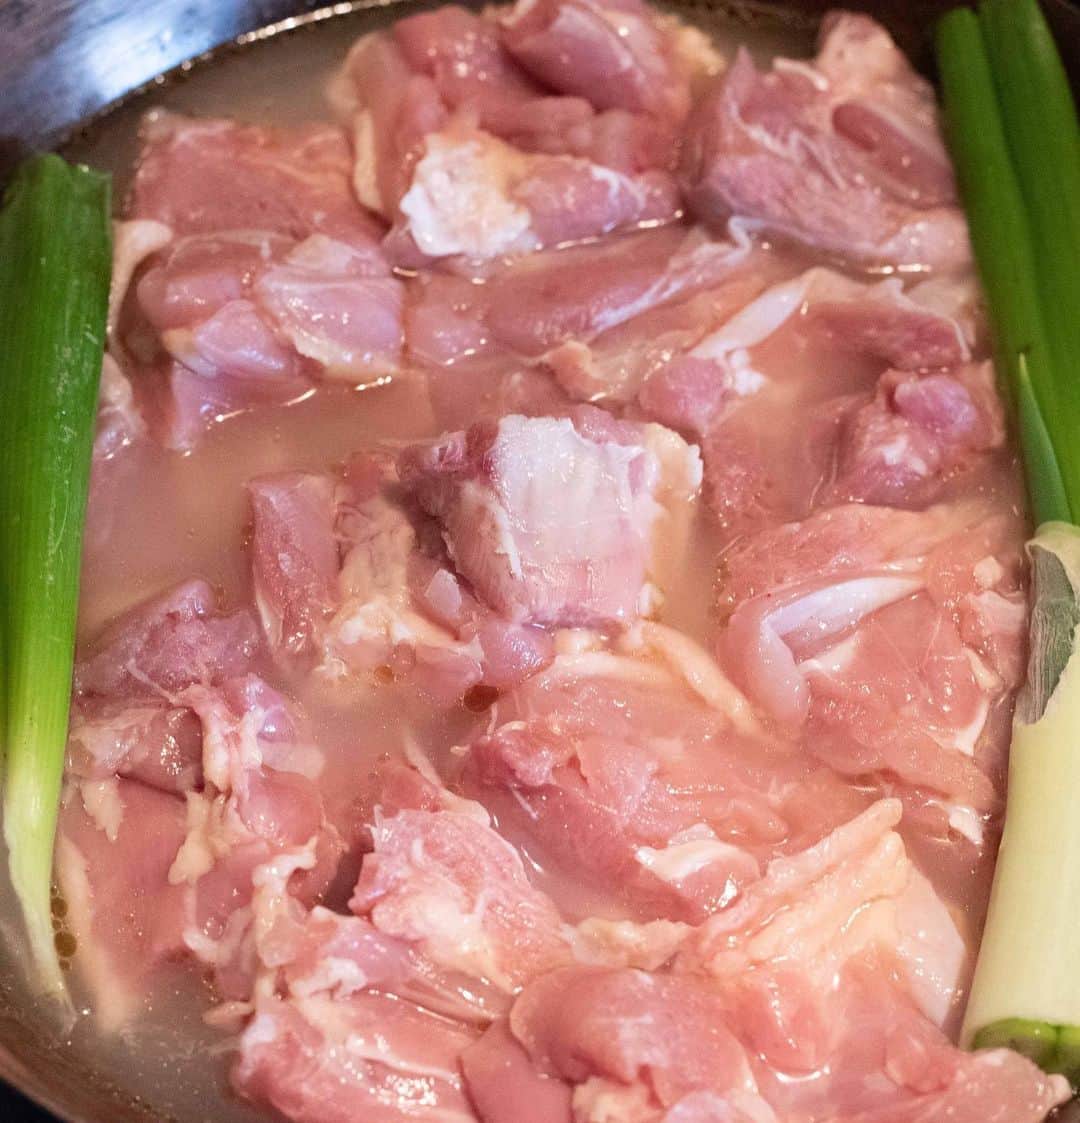 Iguchi Takuto... おうちごはんおじさんさんのインスタグラム写真 - (Iguchi Takuto... おうちごはんおじさんInstagram)「🍳Today’s kitchen(レシピあり🙆‍♂️)﻿ •ワイルドカオマンガイ(野生的海南鶏飯🇹🇭﻿) 食べ応えMAXのカオマンガイレシピどぞ☺️﻿ カオマンガイって大好きなんですが、なんかインパクトに﻿ 欠けるというか、食べ応えがないというか……﻿ そんな僕のイメージを払拭するワイルドなカオマンガイです😚﻿ ワイルドポイントは、鶏もも肉のボリュームと切り方、 たれのピリ辛アレンジの部分です！😎 ぷりっぷりの鶏モモ肉と鶏出汁飯を、 ピリ辛だれに絡めて一気にかきこんでください😝 ﻿ ﻿ 🐔材料（2～4人前）﻿ 【A】﻿ ・米……2合﻿ ・水……380ml﻿ ・鶏ガラスープの素……小さじ2﻿ ・にんにくすりおろし……小さじ1﻿ ・しょうがすりおろし……小さじ1﻿ ・ごま油……小さじ2﻿ ・塩……適量﻿ ﻿ ・鶏もも肉……2枚﻿ ・青ネギ（青い部分）……1本分﻿ ﻿ 🍅トッピング﻿ ・きゅうり……1本﻿ ・ミニトマト……数個﻿ ・パクチー……適量﻿ ・ライム……1/4個﻿ ﻿ 【B:タレ】﻿ ・長ネギ……15cm﻿ ・しょうがすりおろし……小さじ1﻿ ・しょうゆ……大さじ2﻿ ・酢……小さじ1﻿ ・塩……少々﻿ ・コチュジャン……小さじ1﻿ ・豆板醤……小さじ1﻿ ・ごま油……小さじ1﻿ ・水……大さじ1﻿ ・砂糖……小さじ2﻿ ﻿ 🔪下準備﻿ ・鶏もも肉は唐揚げサイズにカットしておく。﻿ 作り方﻿ 1. フライパンに米を入れ、Aの材料を全て入れる。﻿ ﻿ 2. 皮目を下にして鶏もも肉を入れ、青ネギをのせる。﻿ ﻿ 3. 強火で加熱し、沸騰したら弱火に切り替えて蓋をして12分、火を止めて10分ほど蒸らす。﻿ ﻿ 4. 長ネギをみじん切りにして、Bを全てあわせてタレを作っておく。﻿ ﻿ 5. トッピングを飾り、タレをかけて完成。﻿ ﻿ ﻿ ﻿ 美味しいで日本を元気に꒰⍨꒱.+*﻿ ﻿ ━…━…━…━…━…━…━…━…━…━﻿ ﻿ ▼.YouTube始めました🍳﻿ 【らくうまチャンネル】と検索して下さい。﻿ 簡単×美味しい料理はもちろん、﻿ <食をエンターテイメントに💐>をテーマに、﻿ 楽しいコンテンツをたくさん投稿していきます！﻿ 是非チャンネル登録お願いします🙇‍♂️﻿ https://www.youtube.com/channel/UCU8N32A-DZ4aGMH1YZ06gYA﻿ ﻿ ▼.料理教室主宰しています🍳(..開講祝1年💐)﻿ Foodies Labo(@foodies_labo)﻿ 簡単×美味しいに拘り、都内で料理教室を開催しています。﻿ 料理初心者•初参加の方•お友達との参加も大歓迎🙆‍♂️🙆‍♀️﻿ まずは気軽にフォローして下さい！﻿ ﻿ ▼.デリバリー専門のレストランを始めました🍴 ﻿ Foodies Tokyo(@foodies_tokyo)﻿ 不定期での営業となりますが、﻿ Uber Eatsに出店しています！﻿ イベントなども都度行っていますので、﻿ 詳しくは、公式アカウントをご覧下さい！﻿ ﻿ ▼.ストーリーズのハイライトをまとめました🎥﻿ 過去にストーリーズで配信した、イベントの様子や、﻿ 企業さまとのお仕事、日々の料理のシーン、﻿ 自身の掲載記事など、アイコン毎にまとめています。﻿ ご興味ある方はご覧下さい！﻿ ﻿ ━…━…━…━…━…━…━…━…━…━﻿ #らくうまレシピ#おうちごはんおじさんのレシピ #時短レシピ﻿ #簡単レシピ #レシピ #らくうま飯#らくうま料理#らくうま料理家#らくうま料理研究家#料理家#料理研究家#フードスタイリスト#井口タクト#おうちごはん#おうちごはんおじさん#料理男子#家庭料理#簡単料理#手作りごはん#飯テロ#料理好きな人と繋がりたい#Foodstylist#ouchigohan_ojisan﻿ #カオマンガイ #海南鶏飯 #タイ料理 #タイ料理レシピ」11月19日 17時33分 - ouchigohan_ojisan